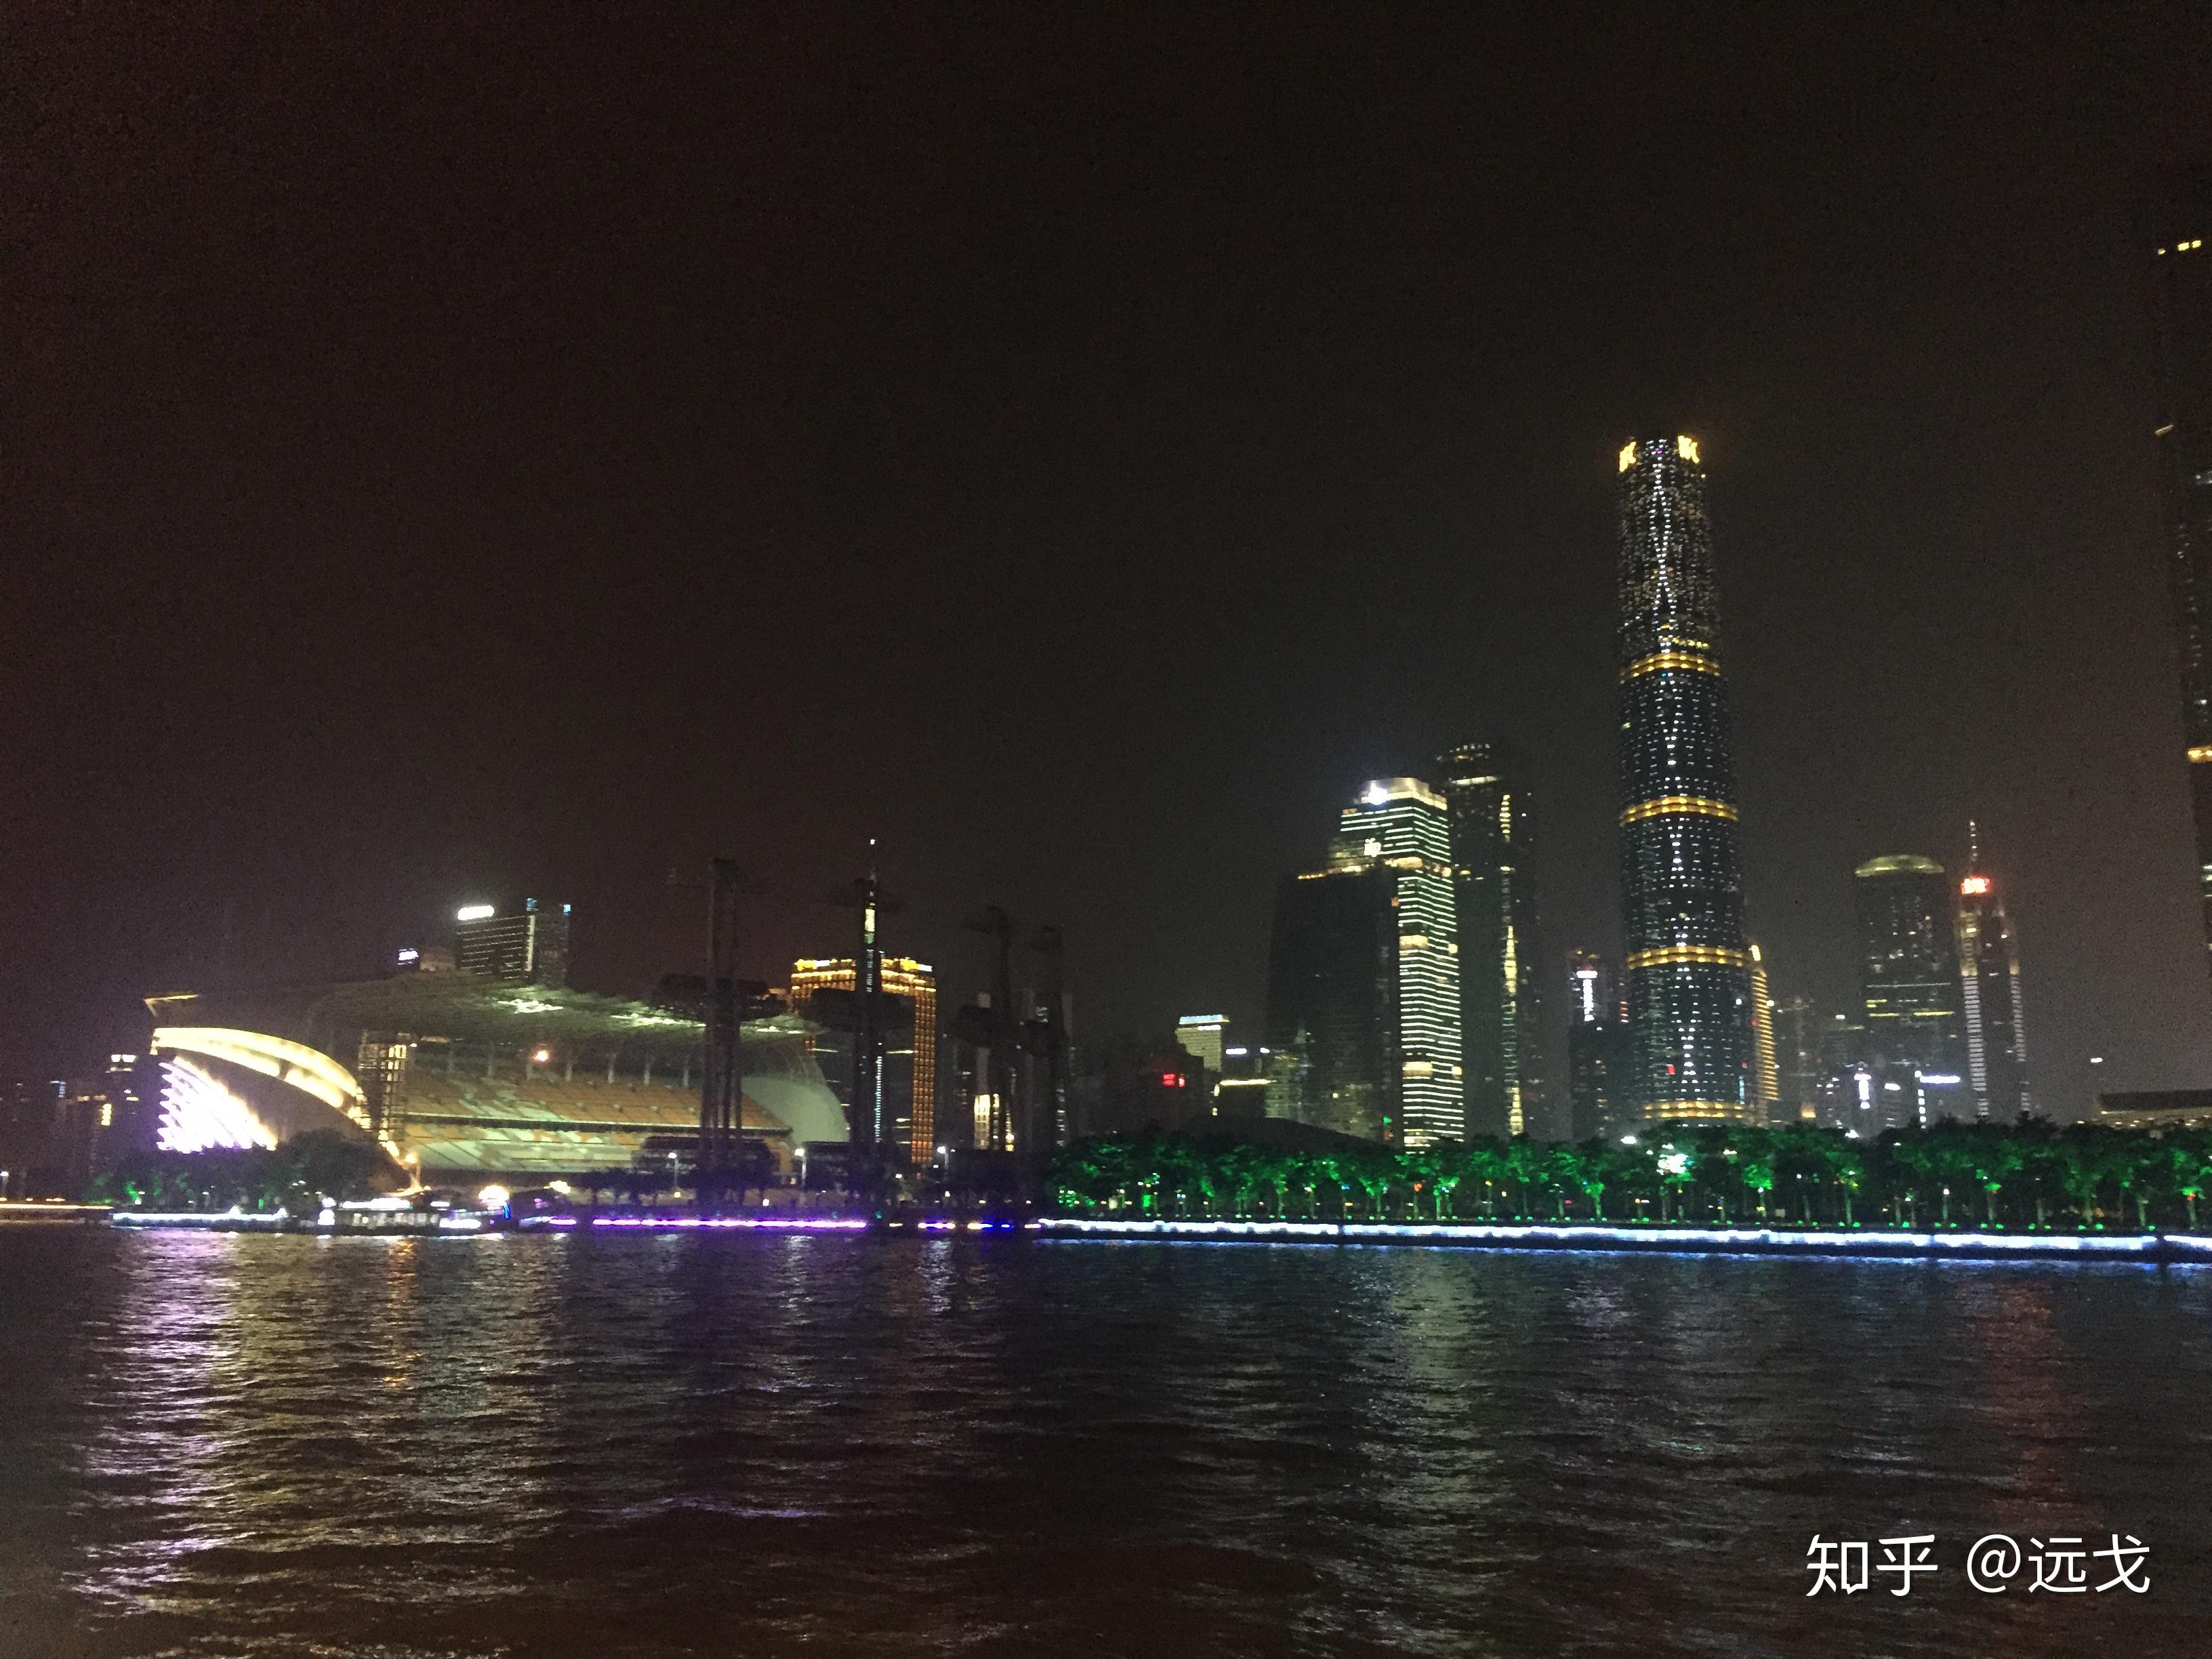 【携程攻略】广州海珠桥景点,海珠桥在广州也是一个比较受欢迎的景点，因为它是广州市第一座跨江桥…